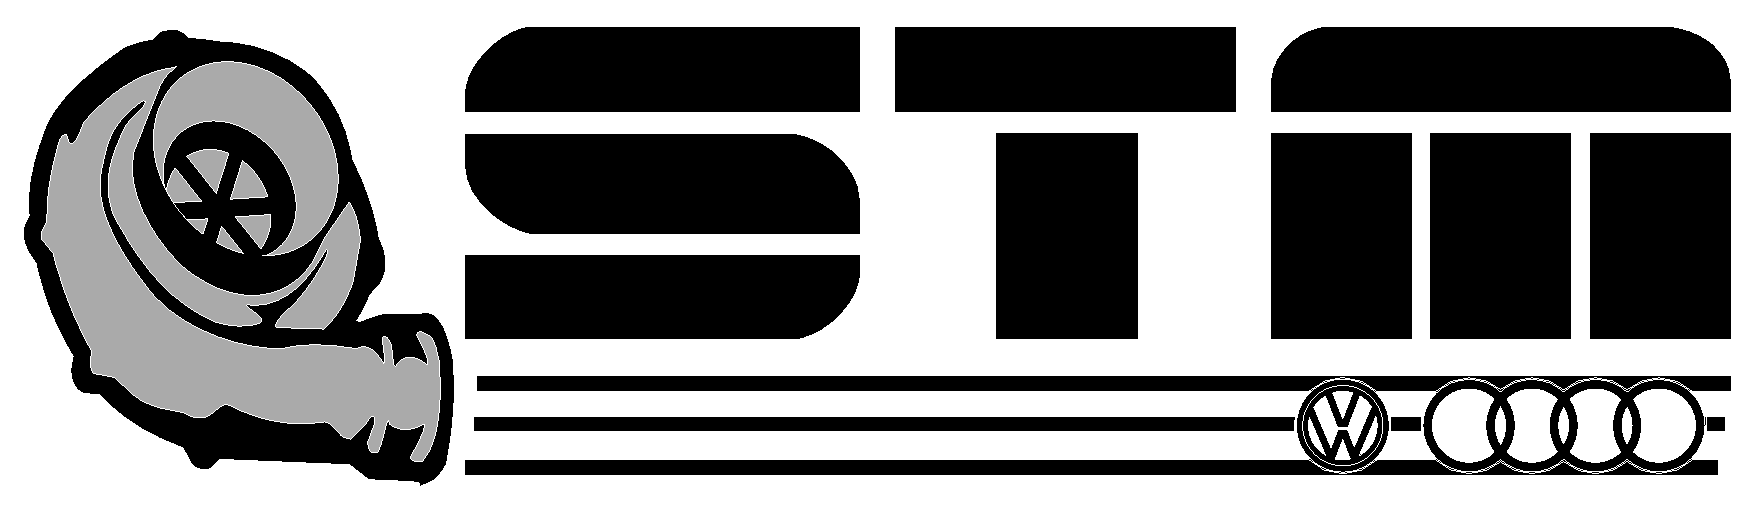 STM Logo